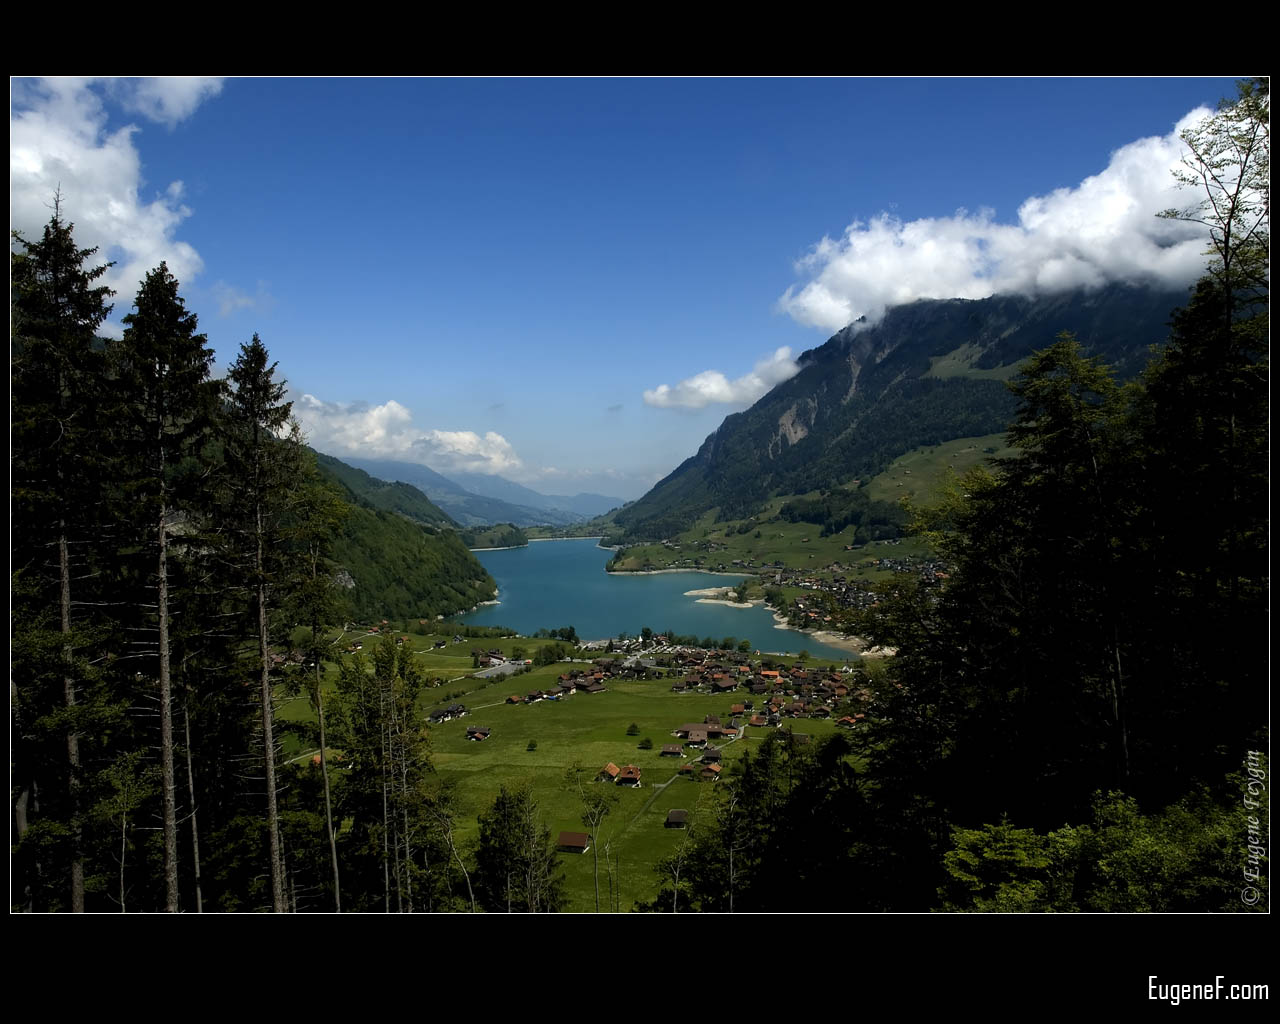 Swiss Village